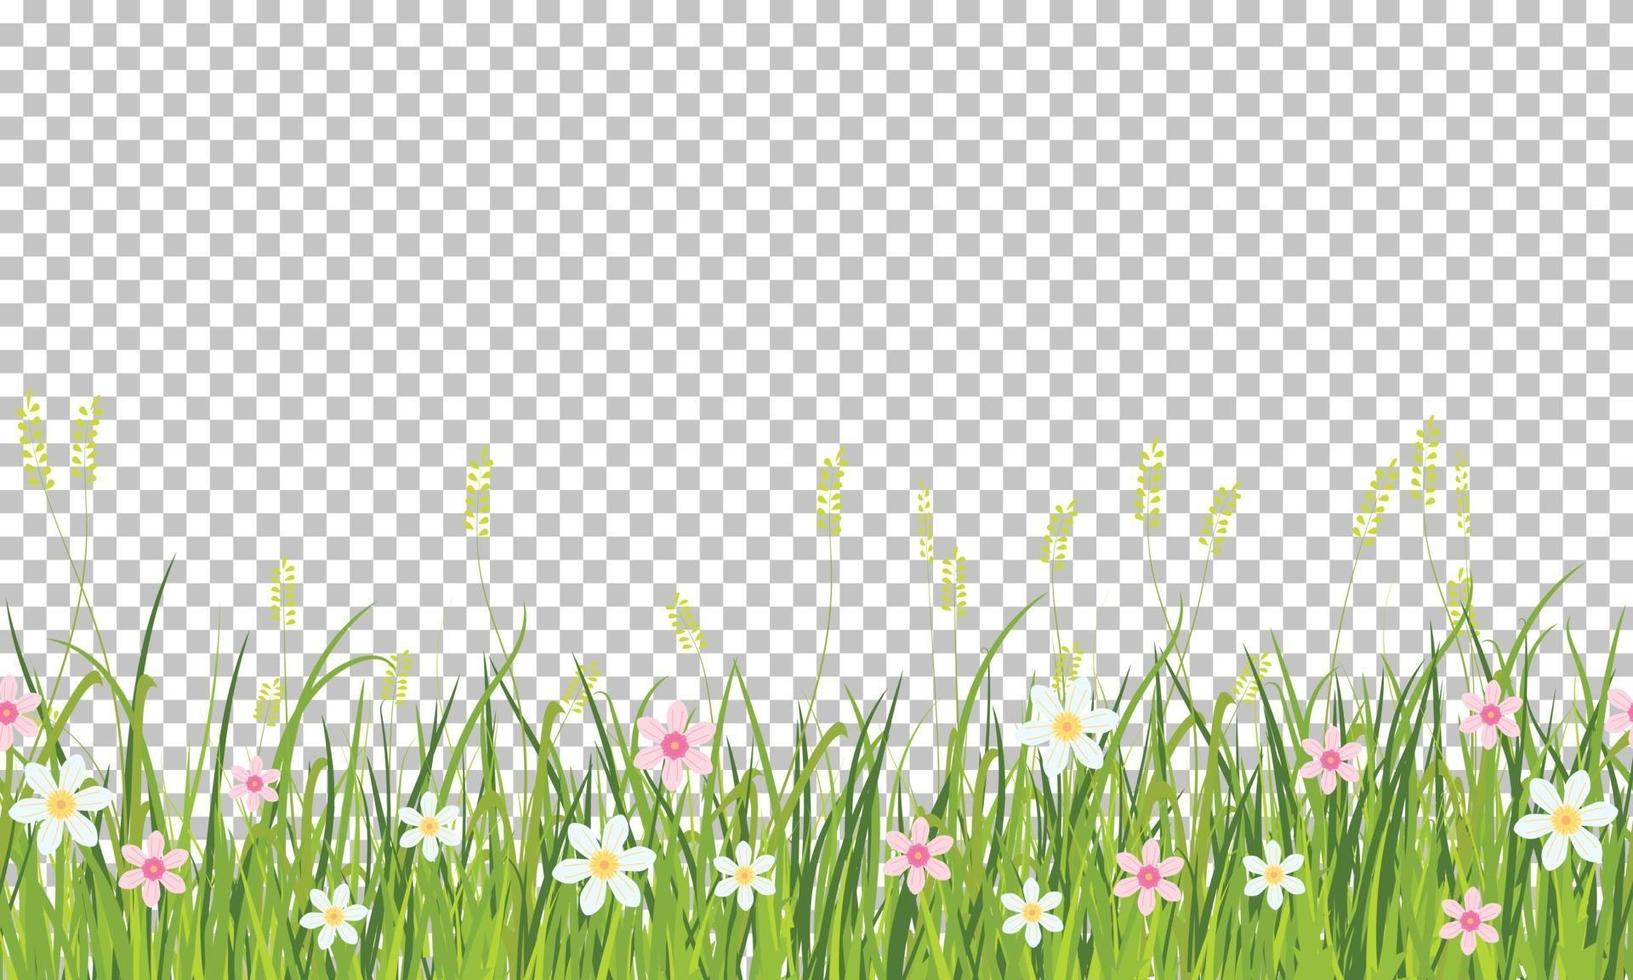 bordo di erba e fiori di primavera, elemento di decorazione di cartolina d'auguri di Pasqua, illustrazione isolato su sfondo trasparente vettore